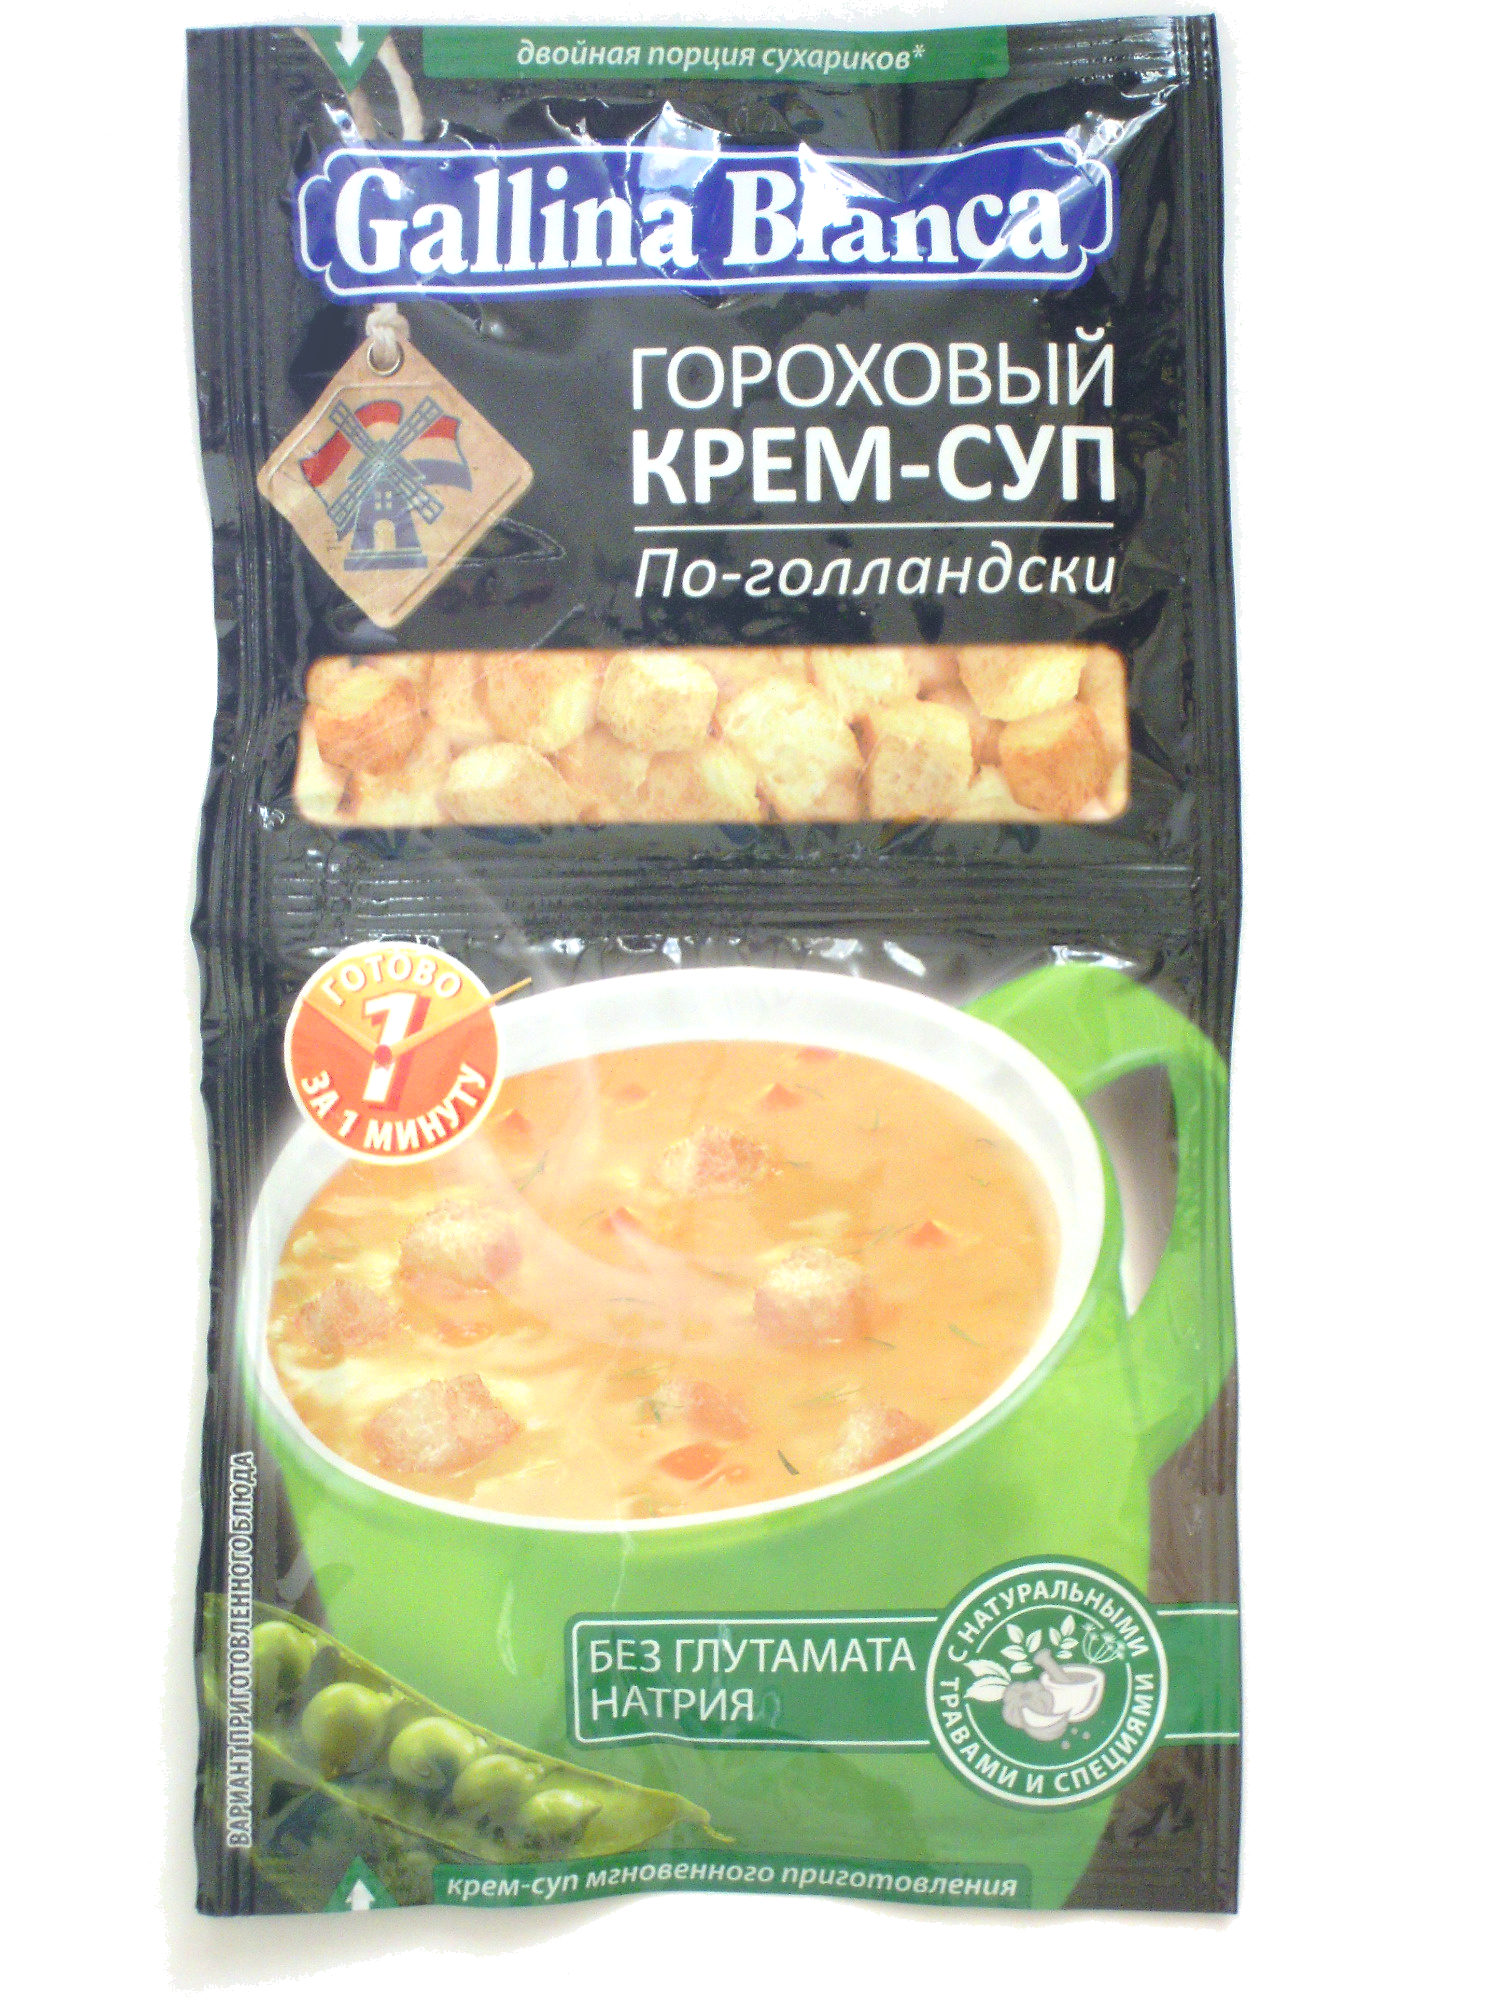 Гороховый крем-суп «По-голландски» - Produit - ru